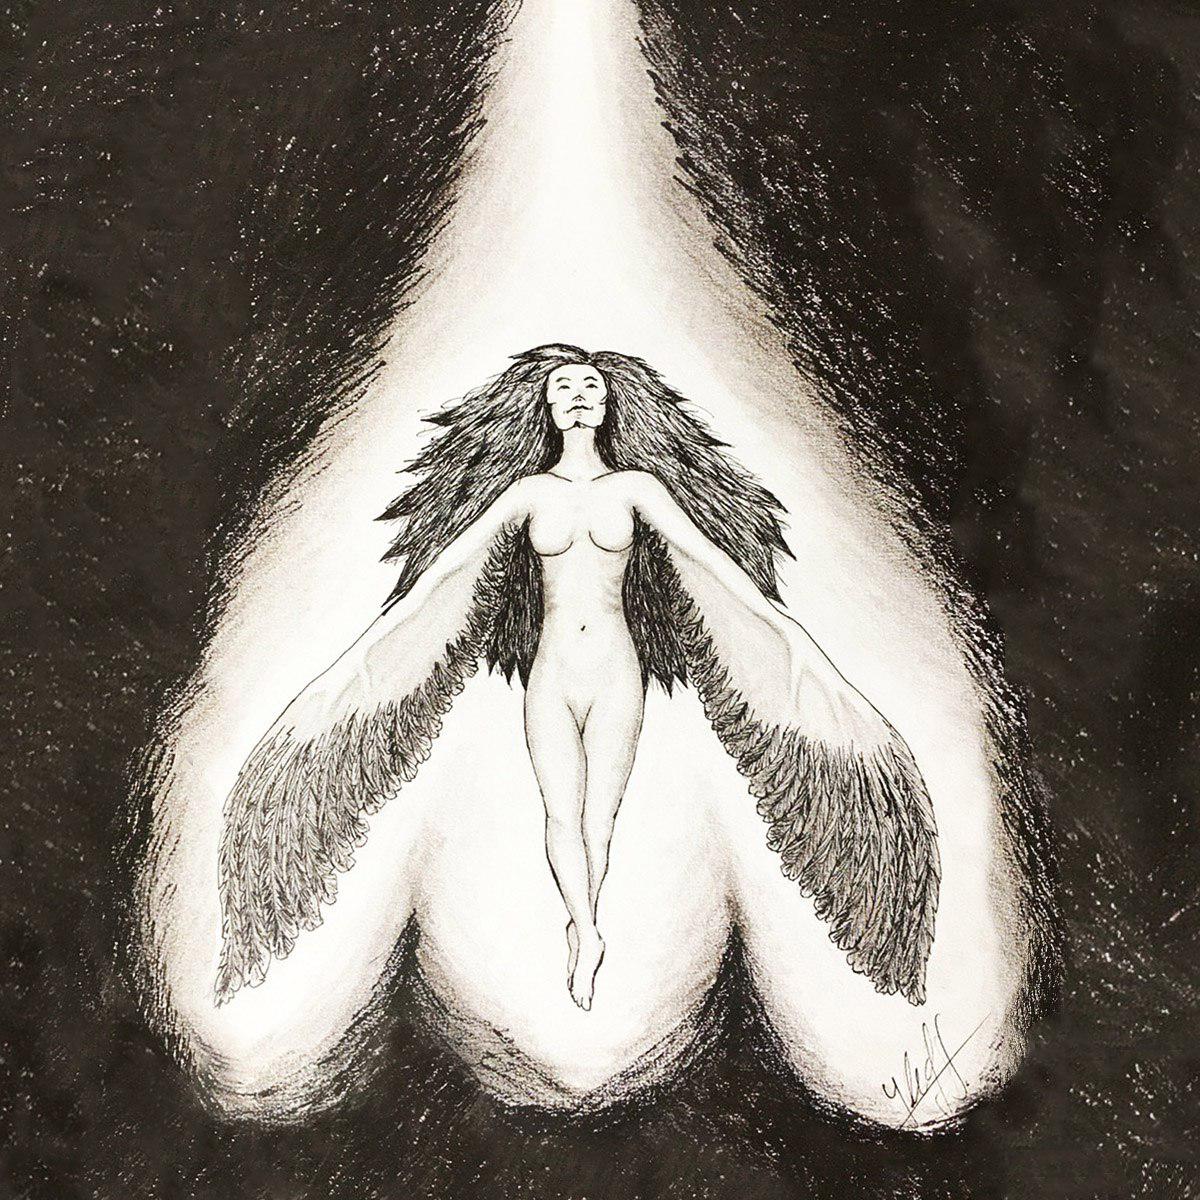 Ilustración con fondo negro, una mujer con pelo, desnuda largo y brazos que terminan en alas se encuentra iluminada desde arriba por un rayo de luz blanca